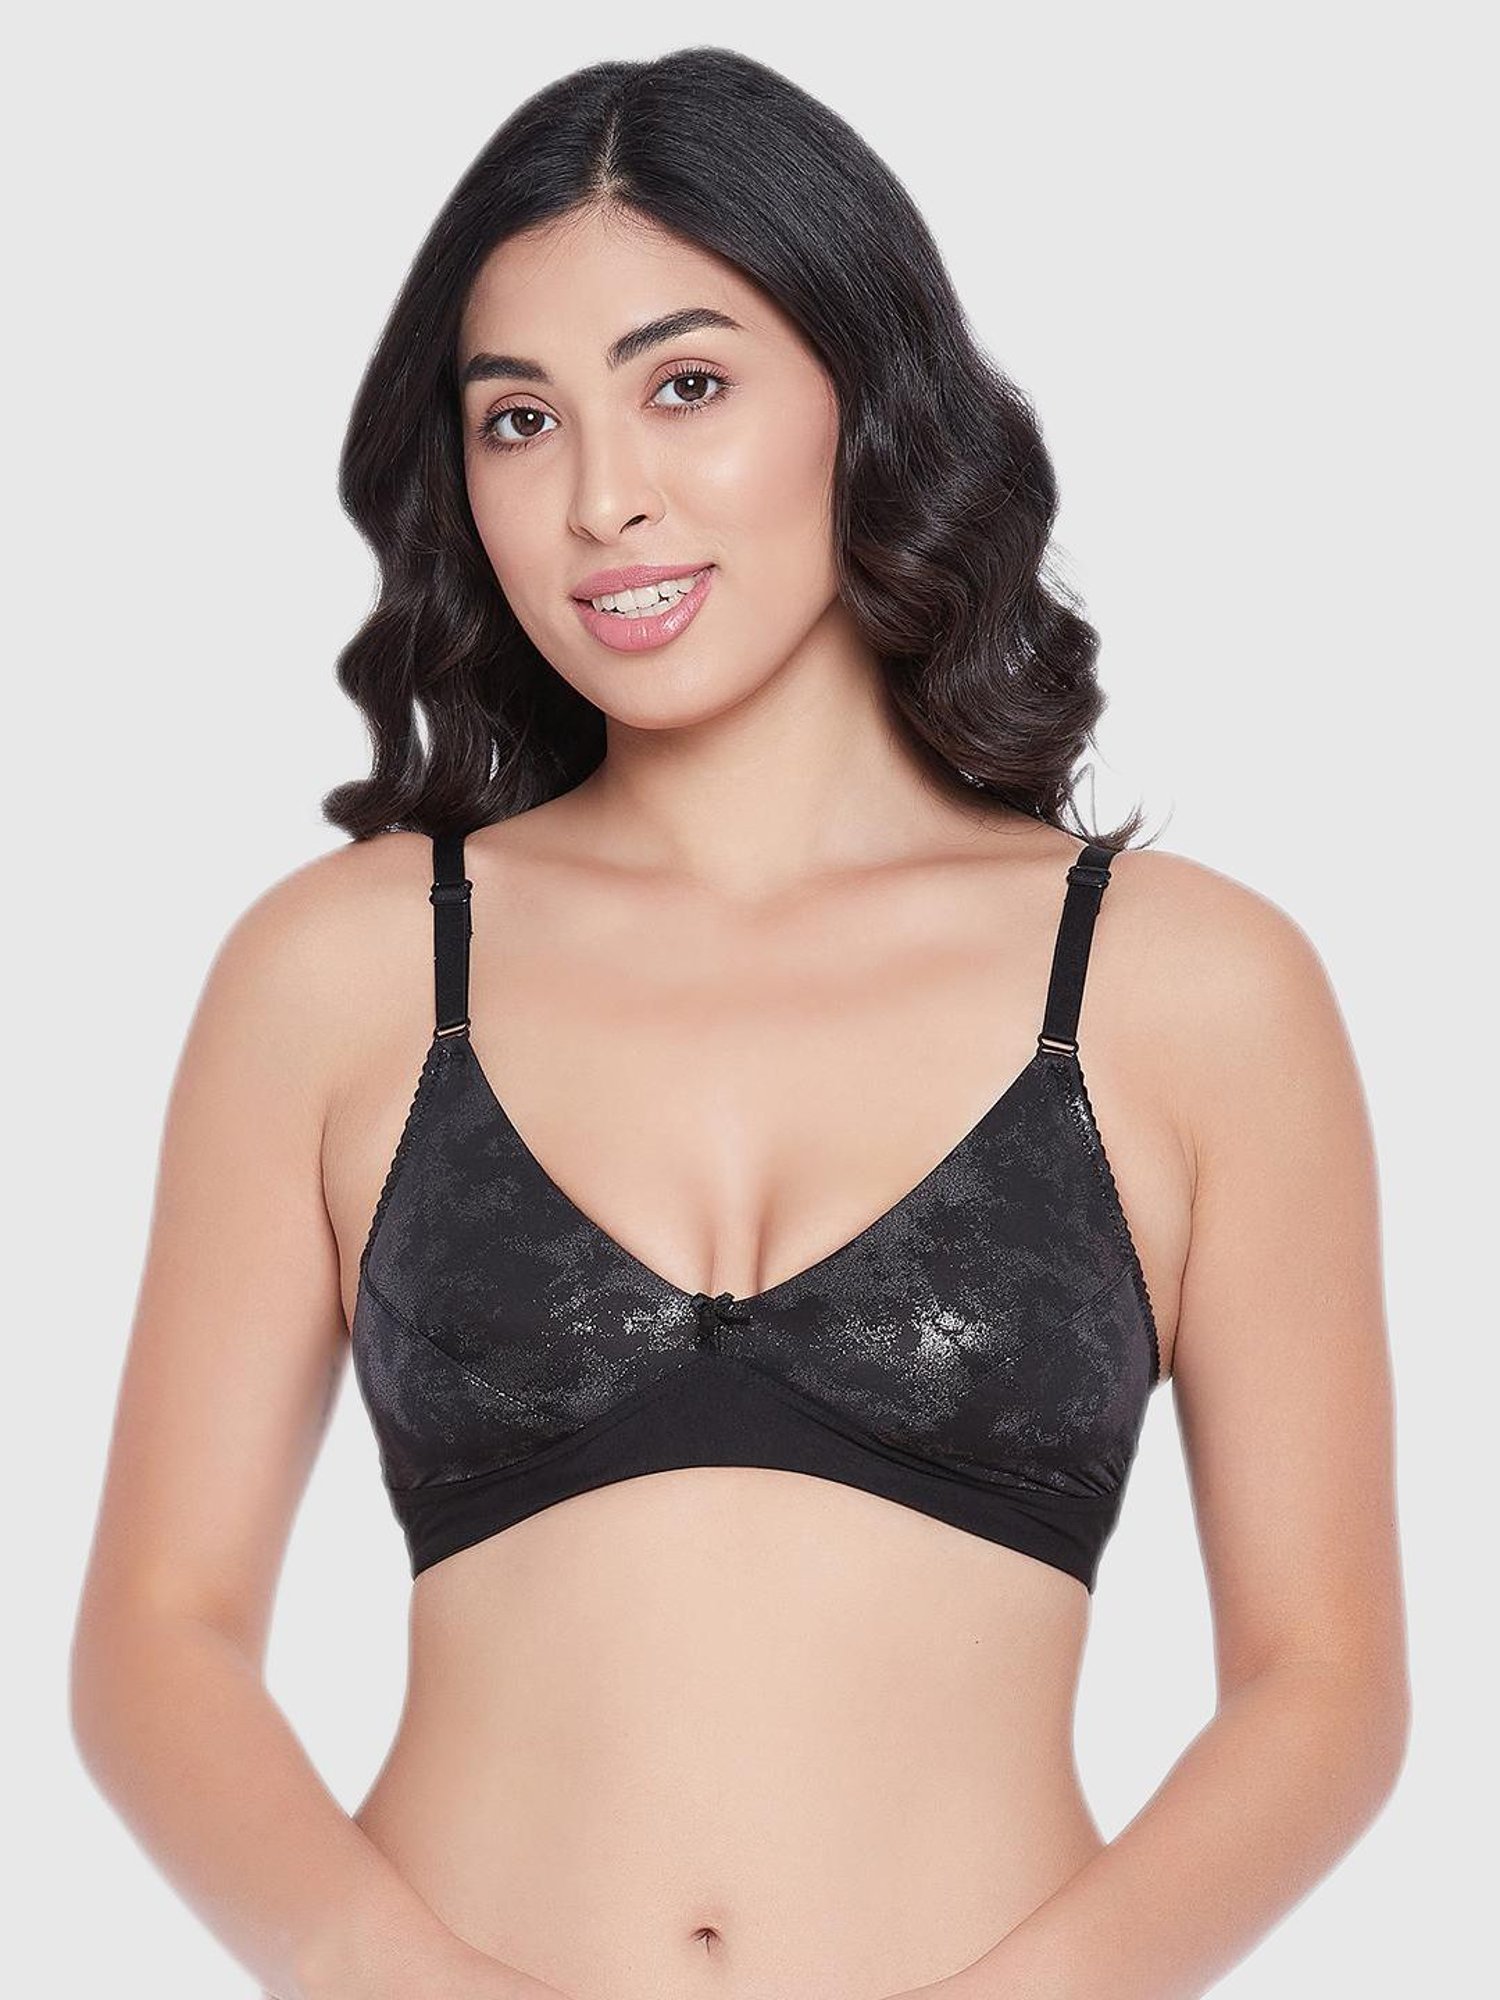 Buy Clovia Nude Lace Non Padded Bra for Women Online @ Tata CLiQ